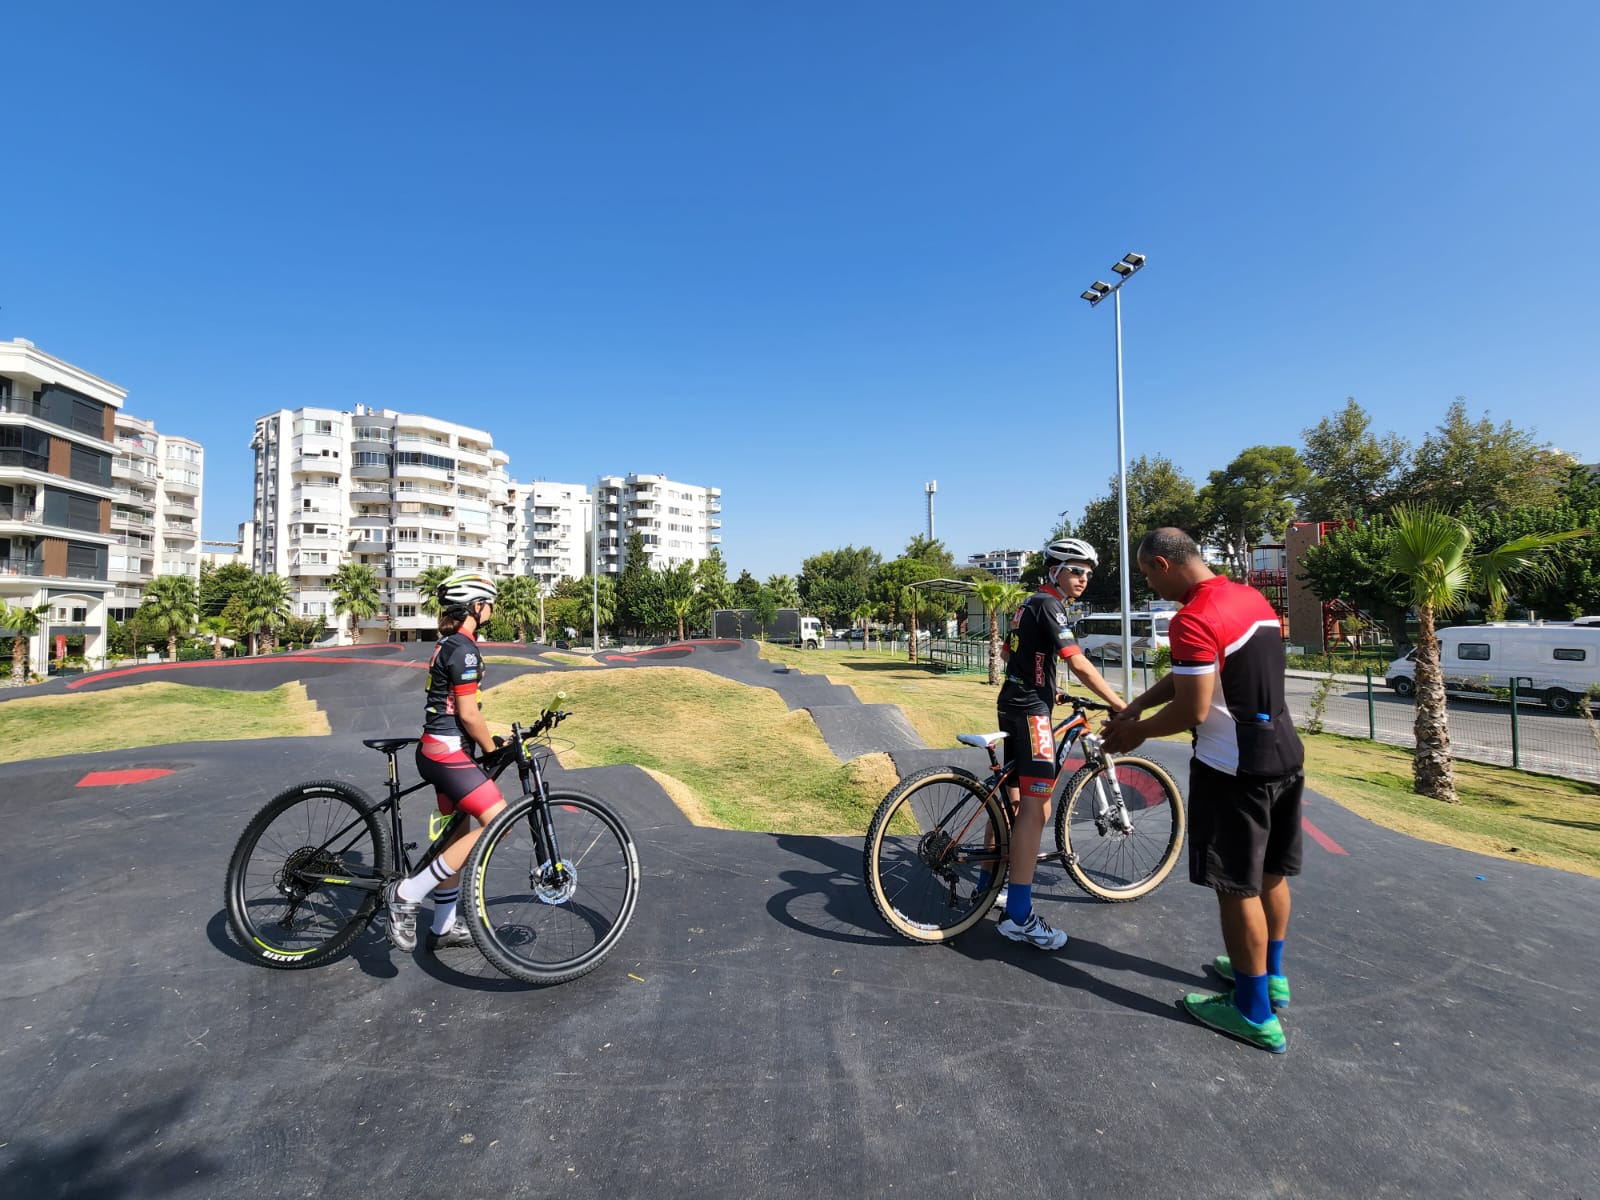 İzmir Karşıyaka’da pump track bisiklet parkuru yoğun ilgi görüyor1